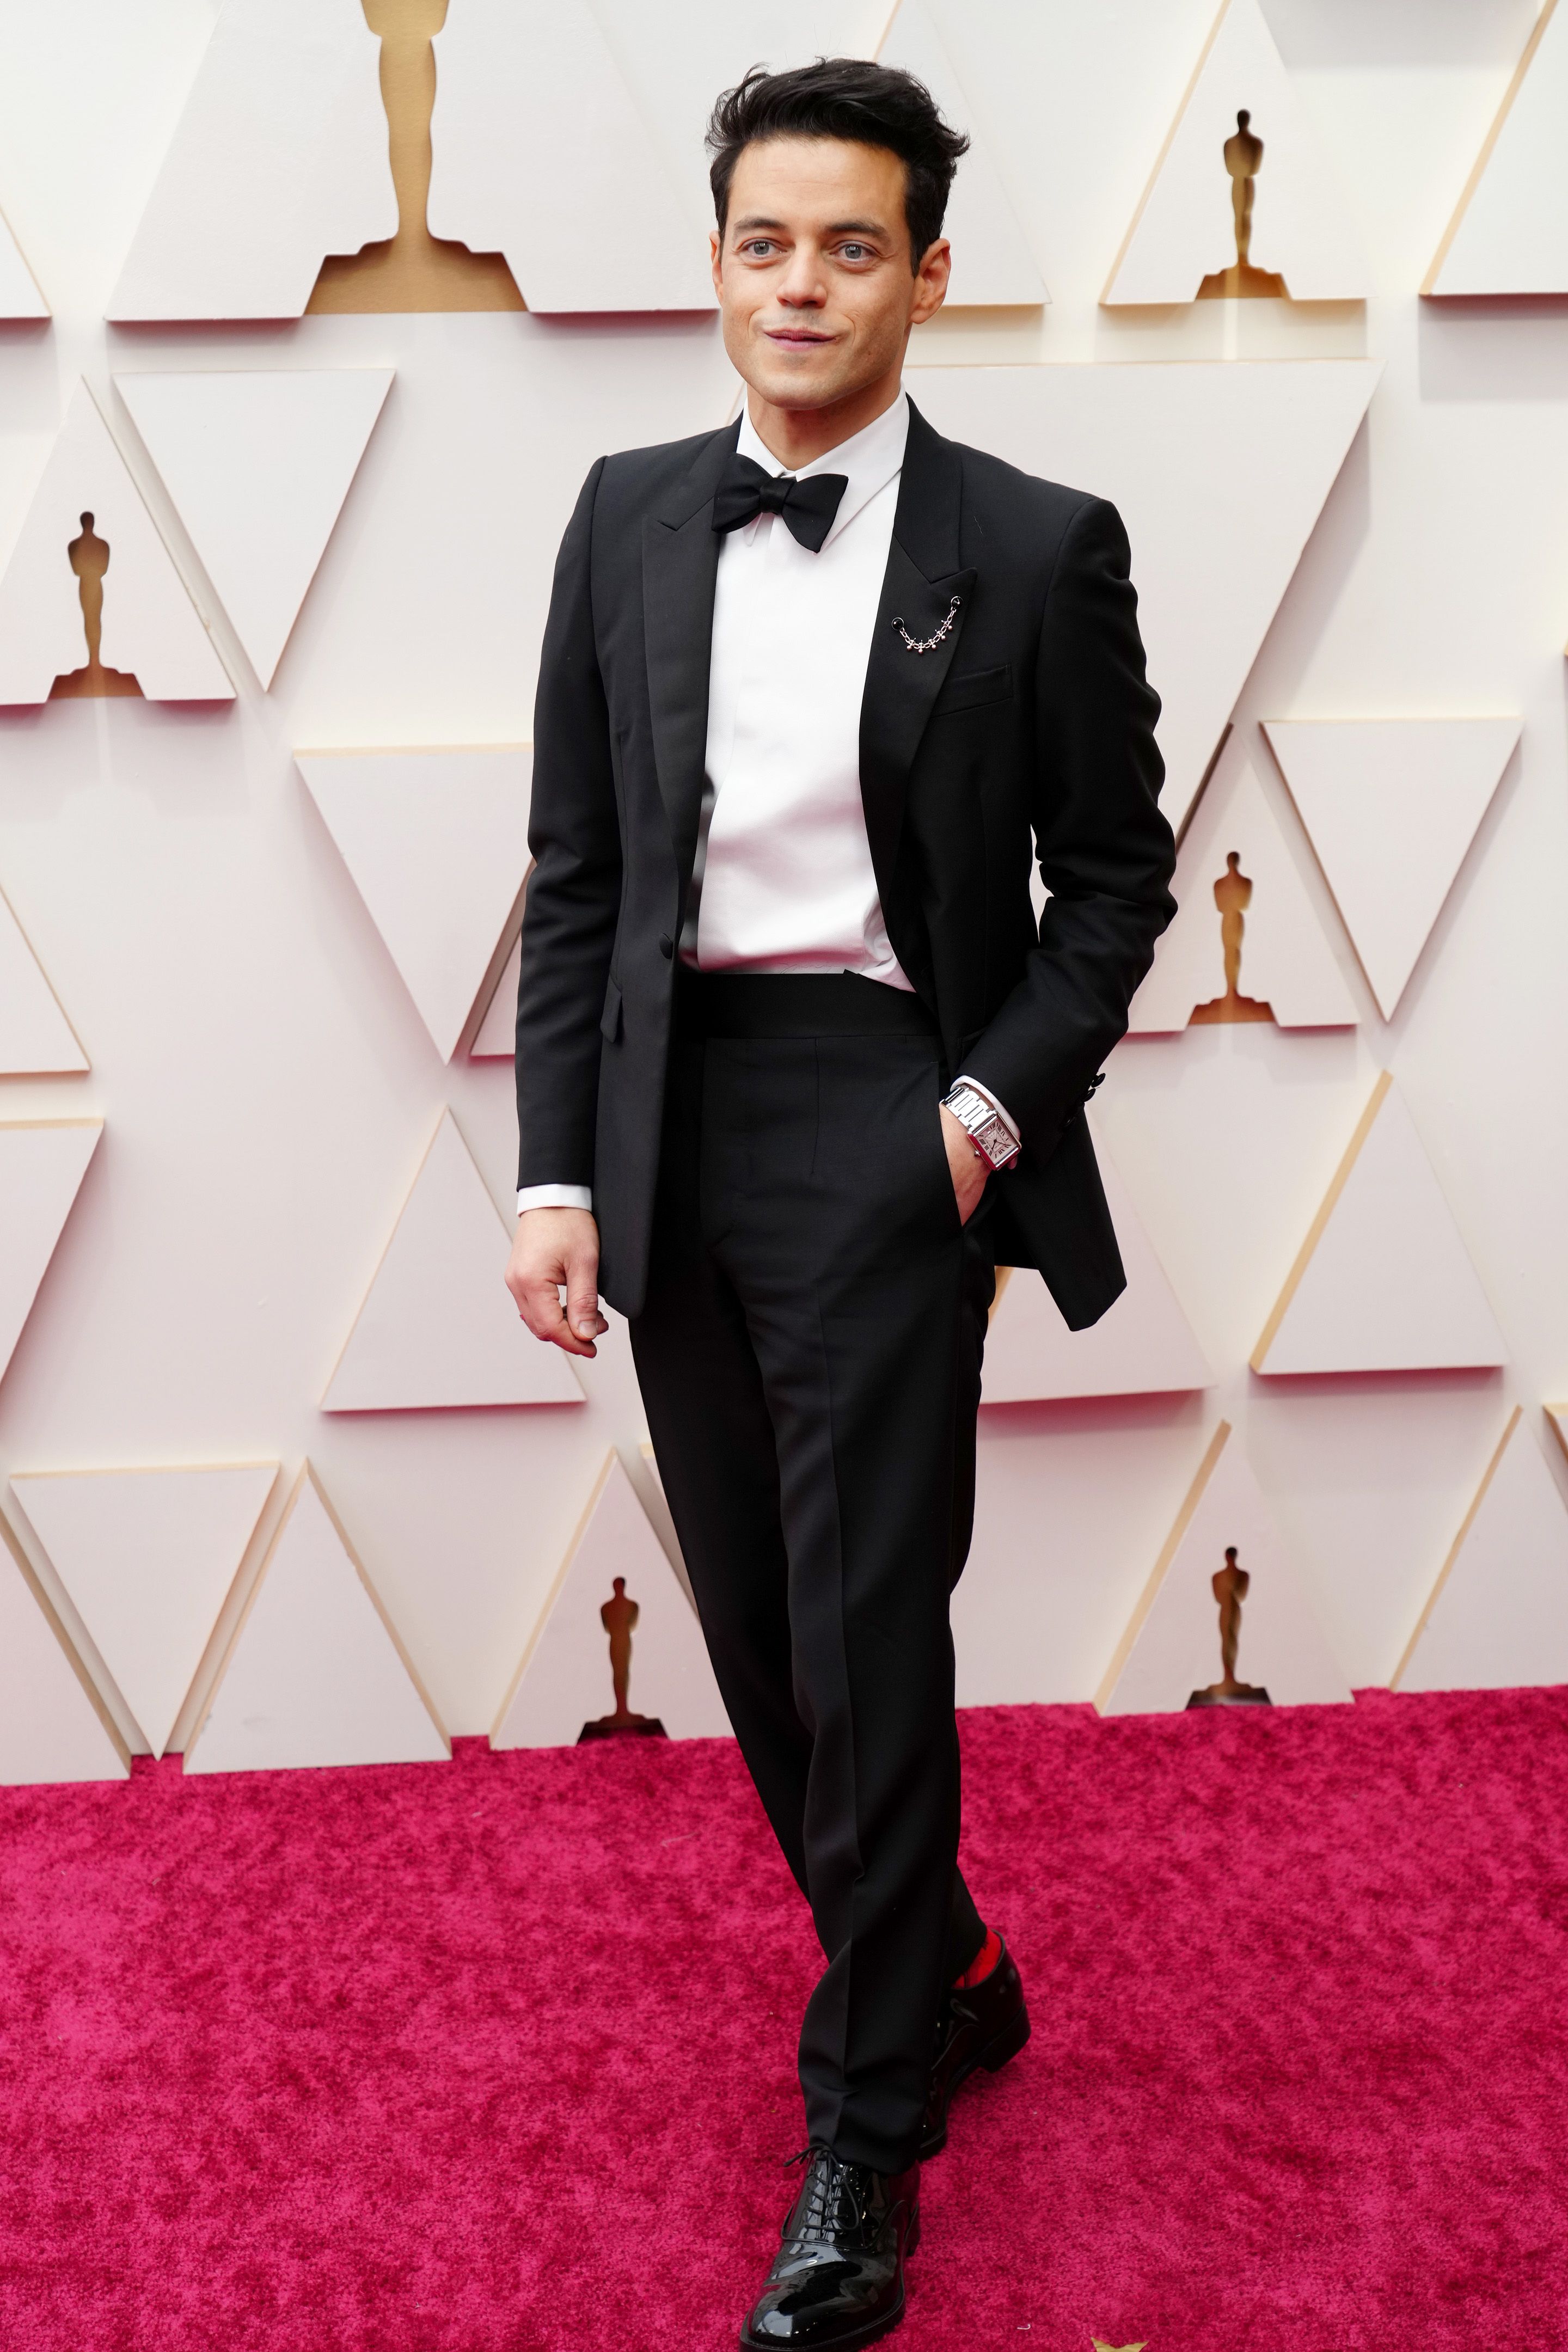 chokerende Åbent Lignende The Best Dressed Men on the 2022 Oscars Red Carpet